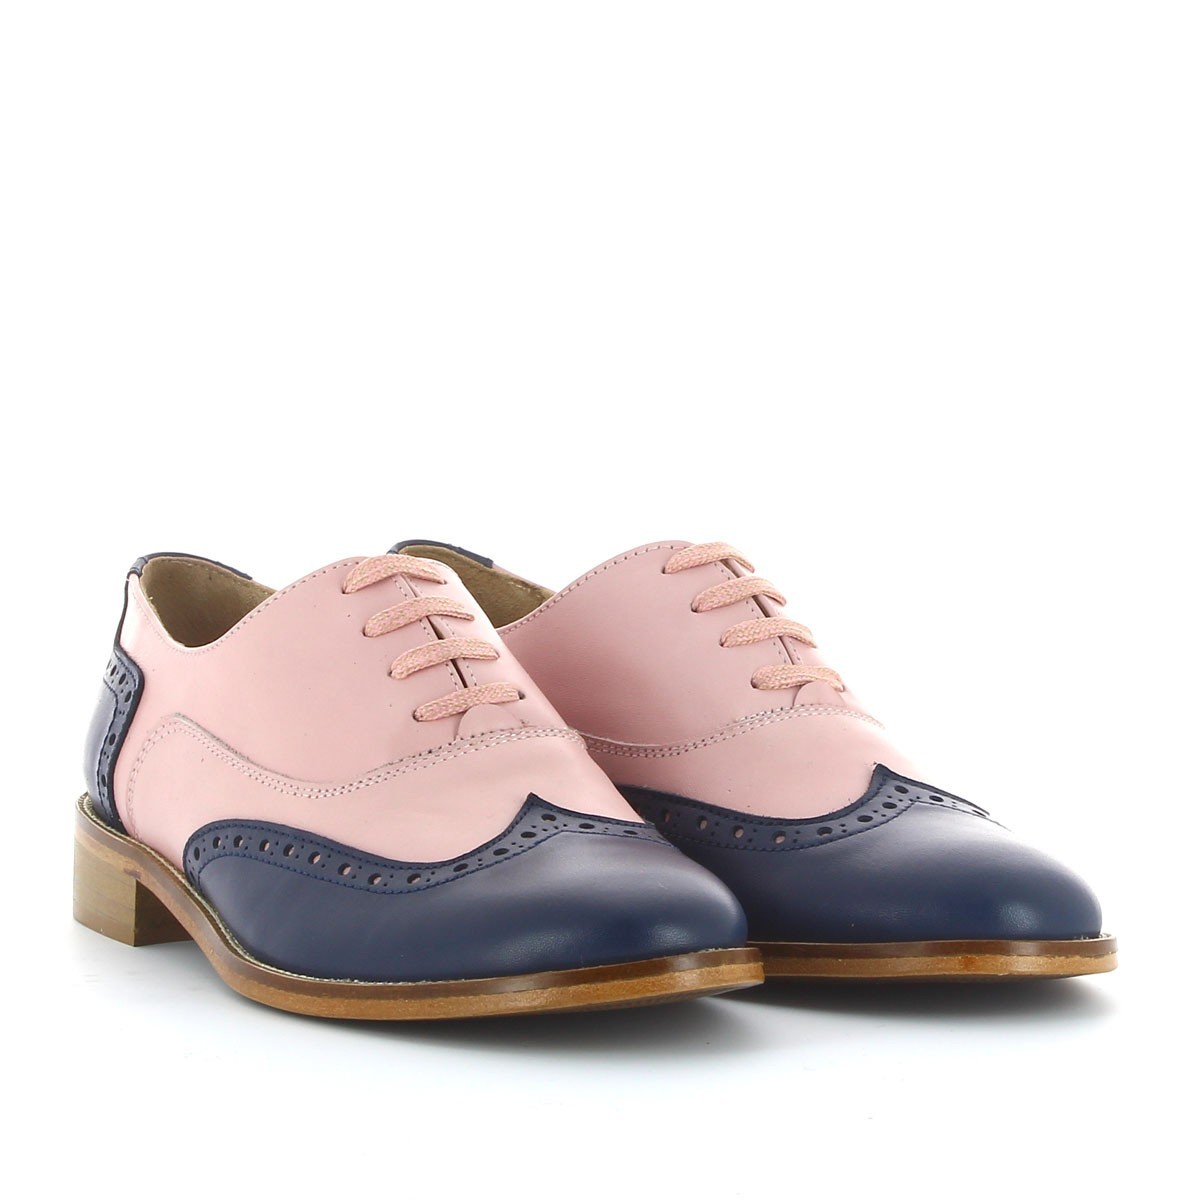 Chaussures Oxford roses et bleues pour femme, Bruno Bernardo